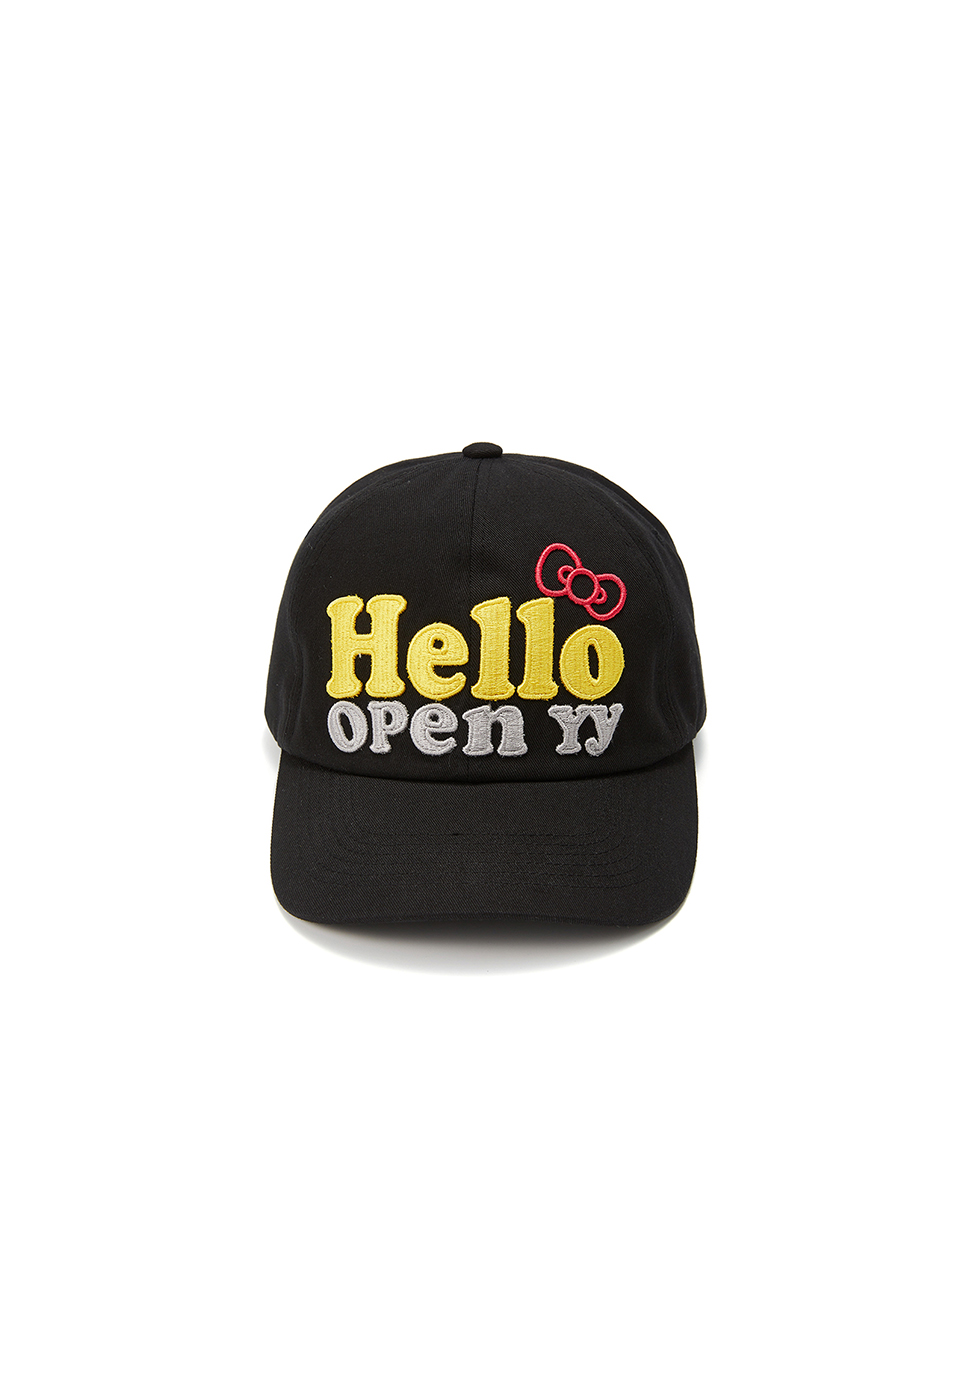 [6/7 DELIVERY] HELLO KITTY X YY HELLO BALL CAP, BLACK